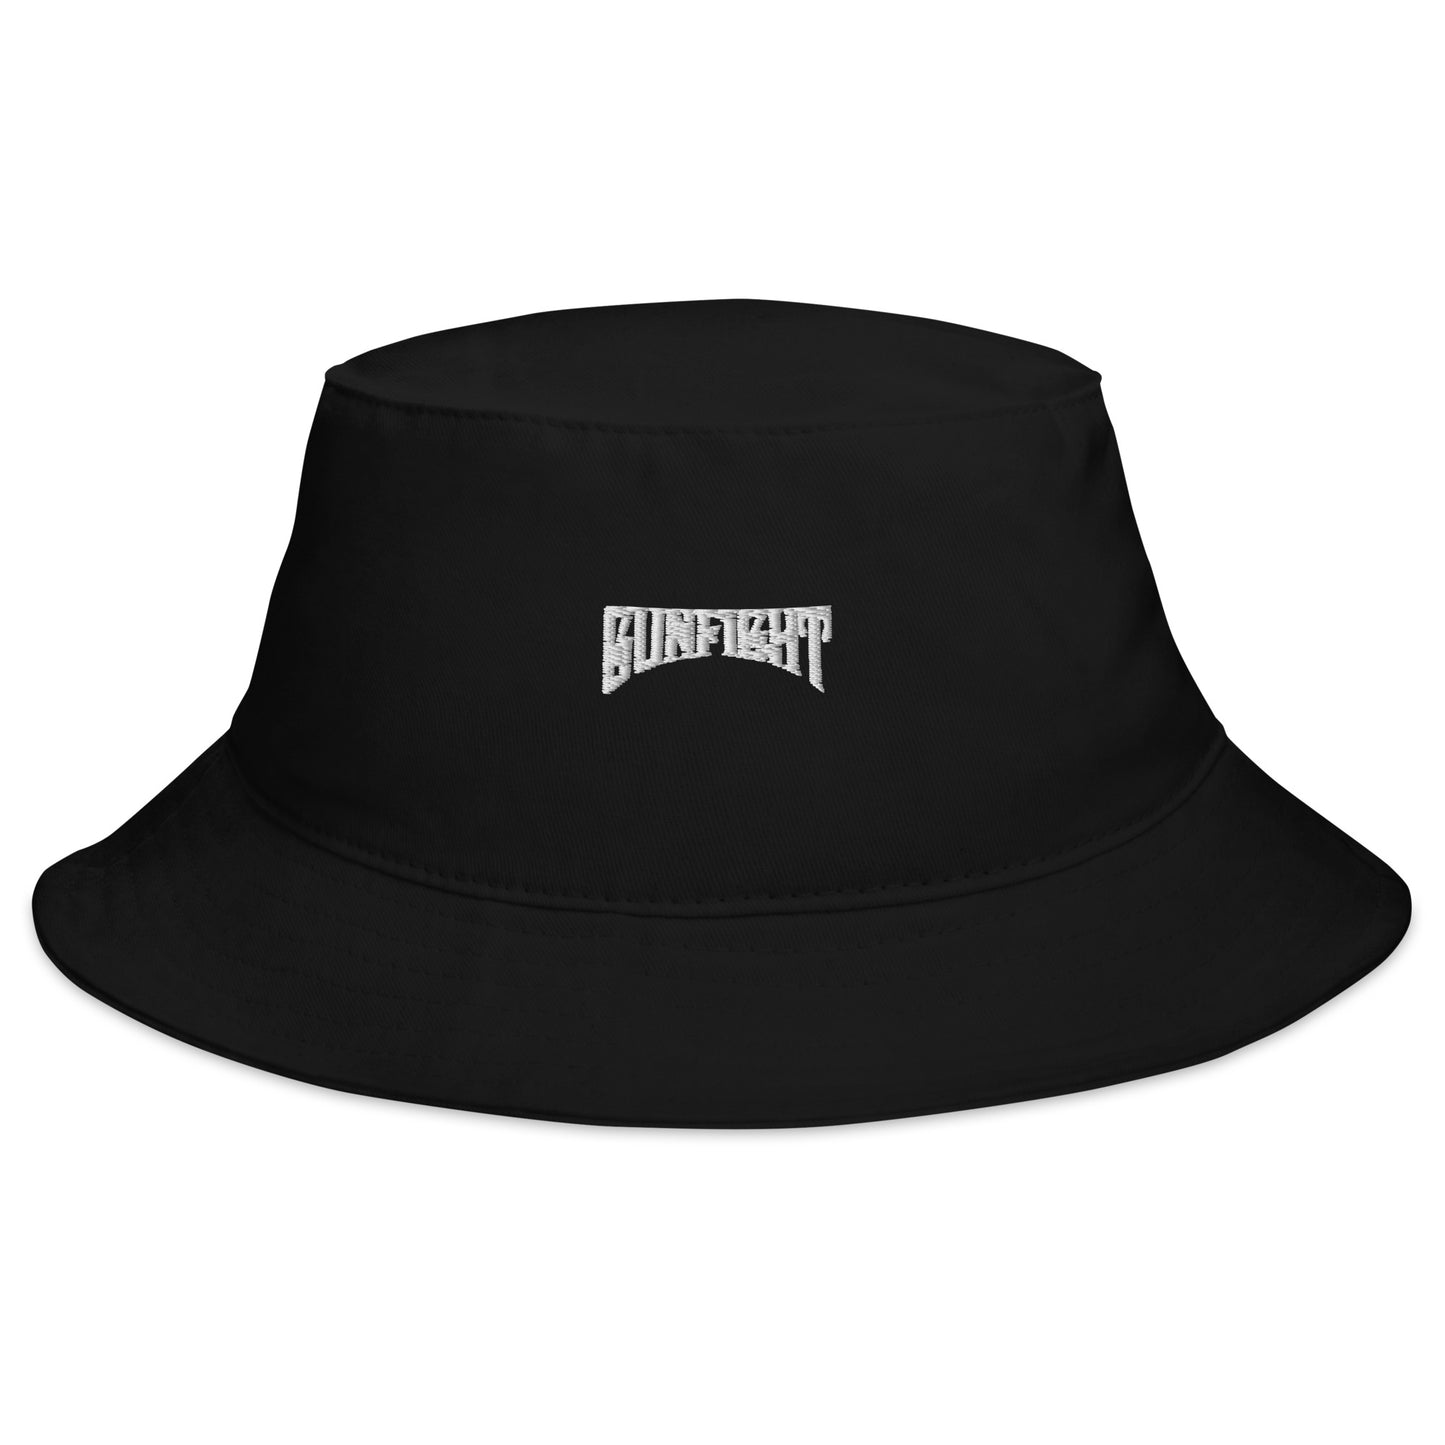 GunFight Bucket Hat